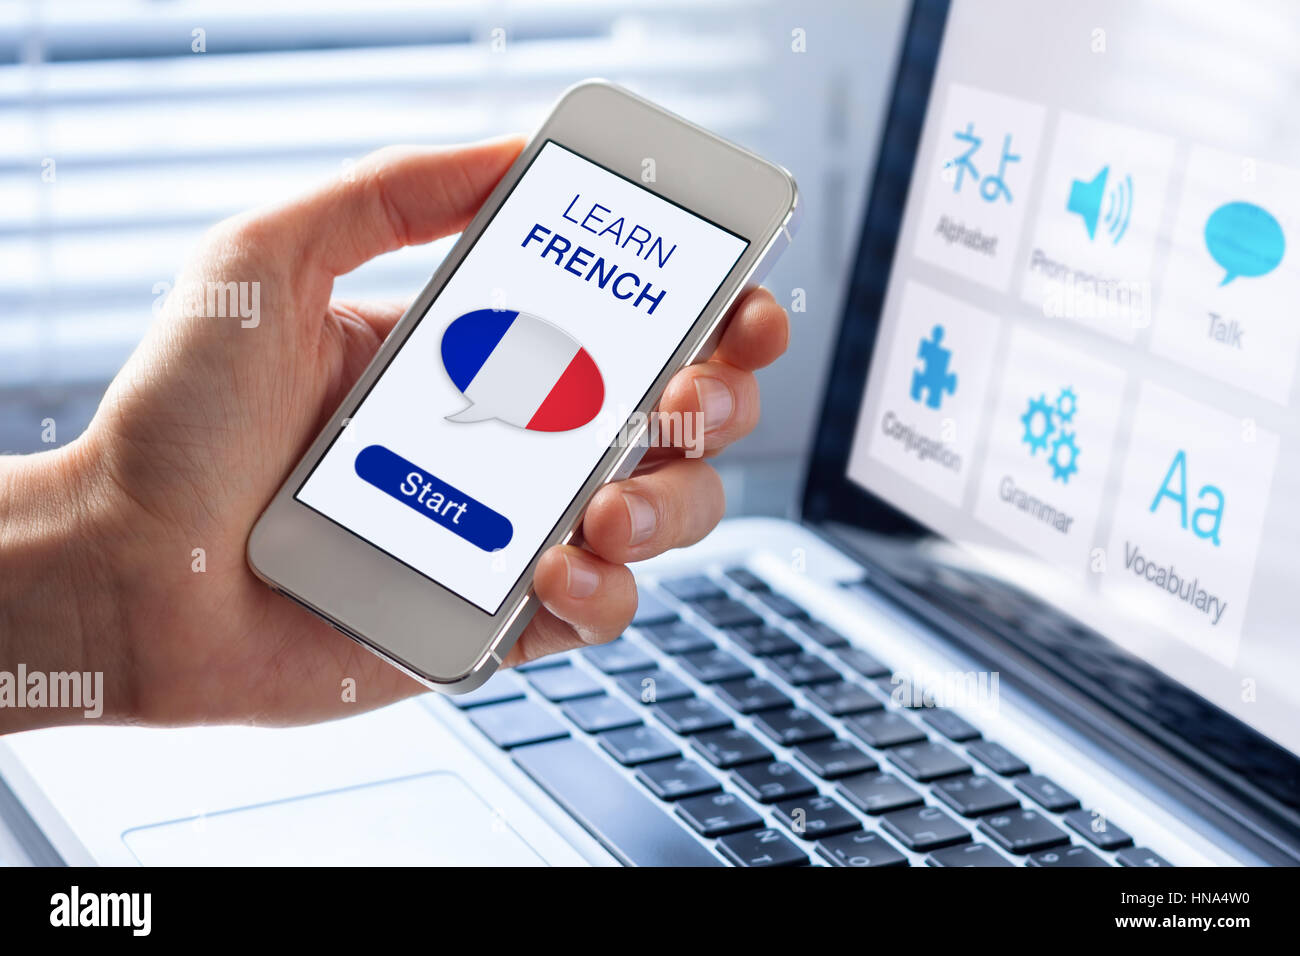 Apprendre le français en ligne langue concept avec une personne montrant l'e-learning application sur téléphone mobile avec le pavillon de la France Banque D'Images